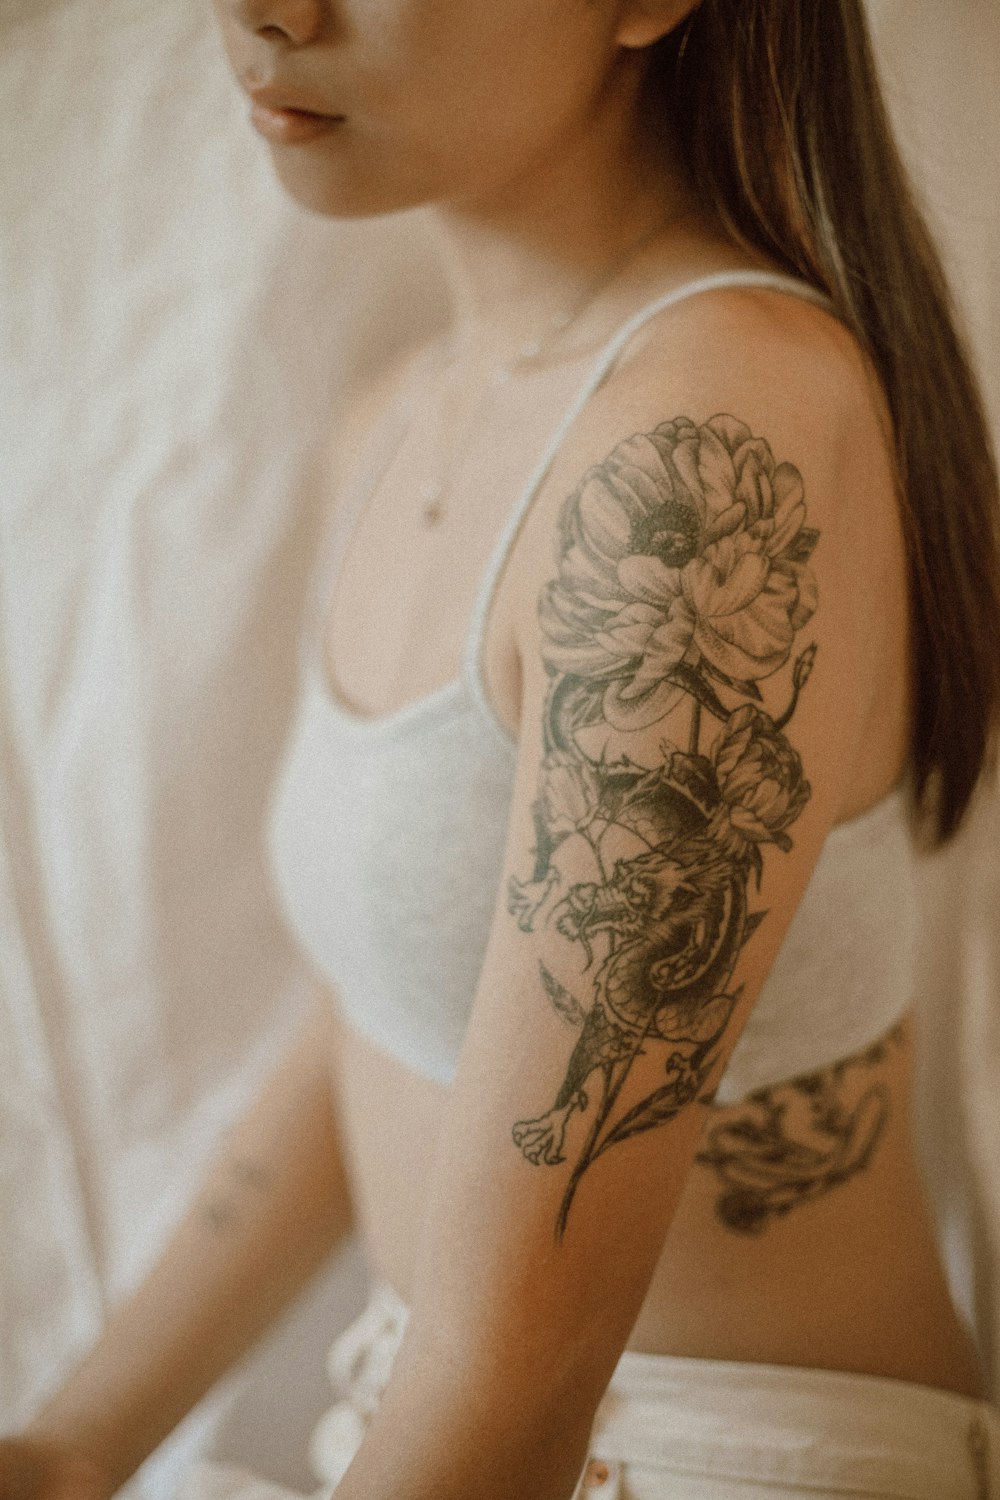 A Tattoo. The Tattoo.. Photo by Jasmin Chew on Unsplash